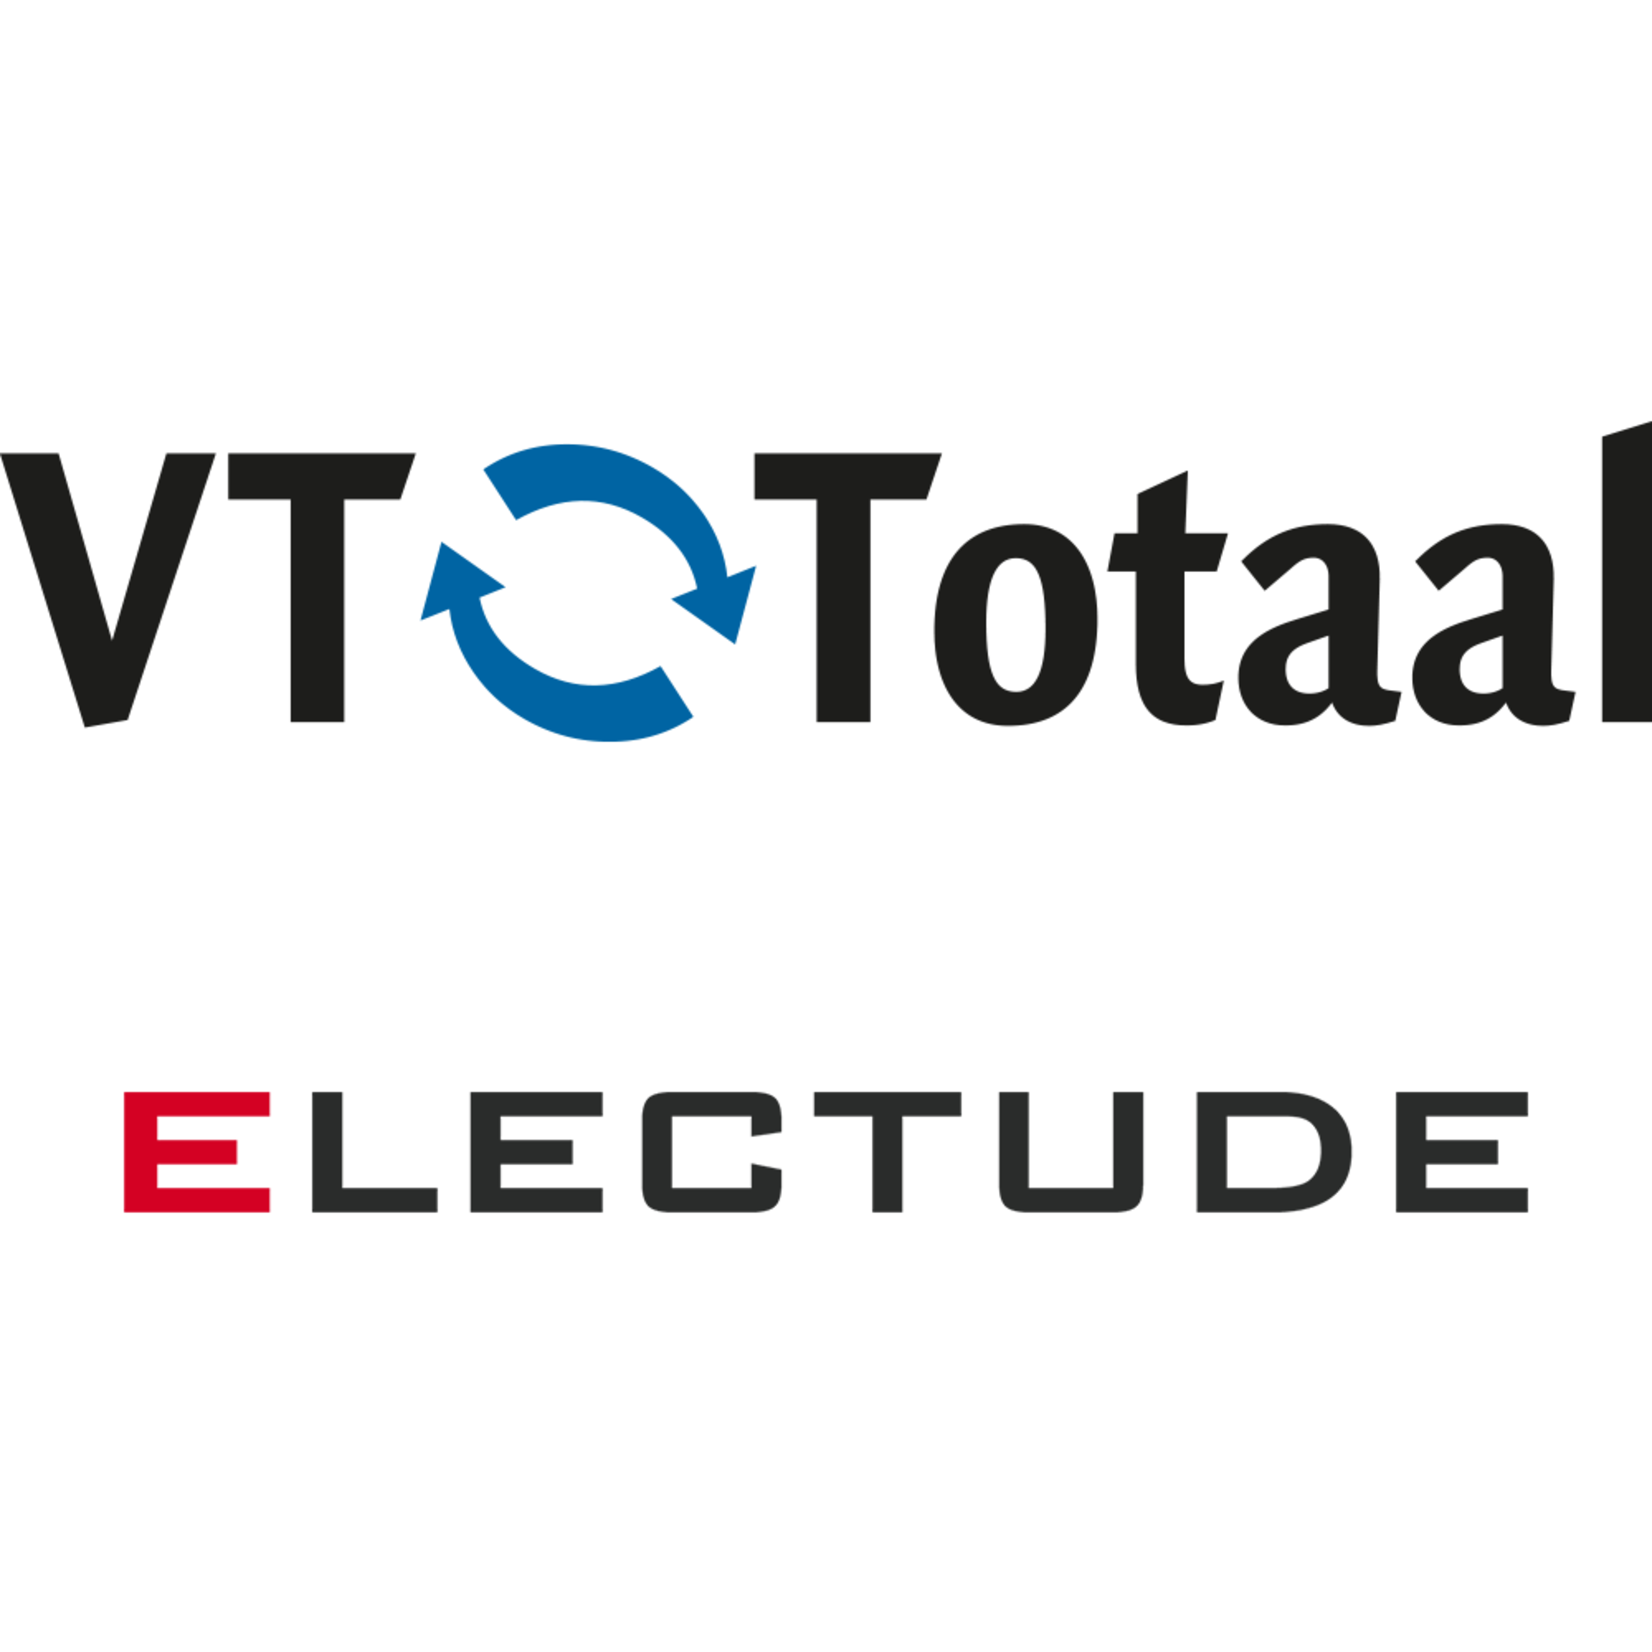 Licentie Electude - MK Autotechniek, VT-Totaal only 1 schooljaar